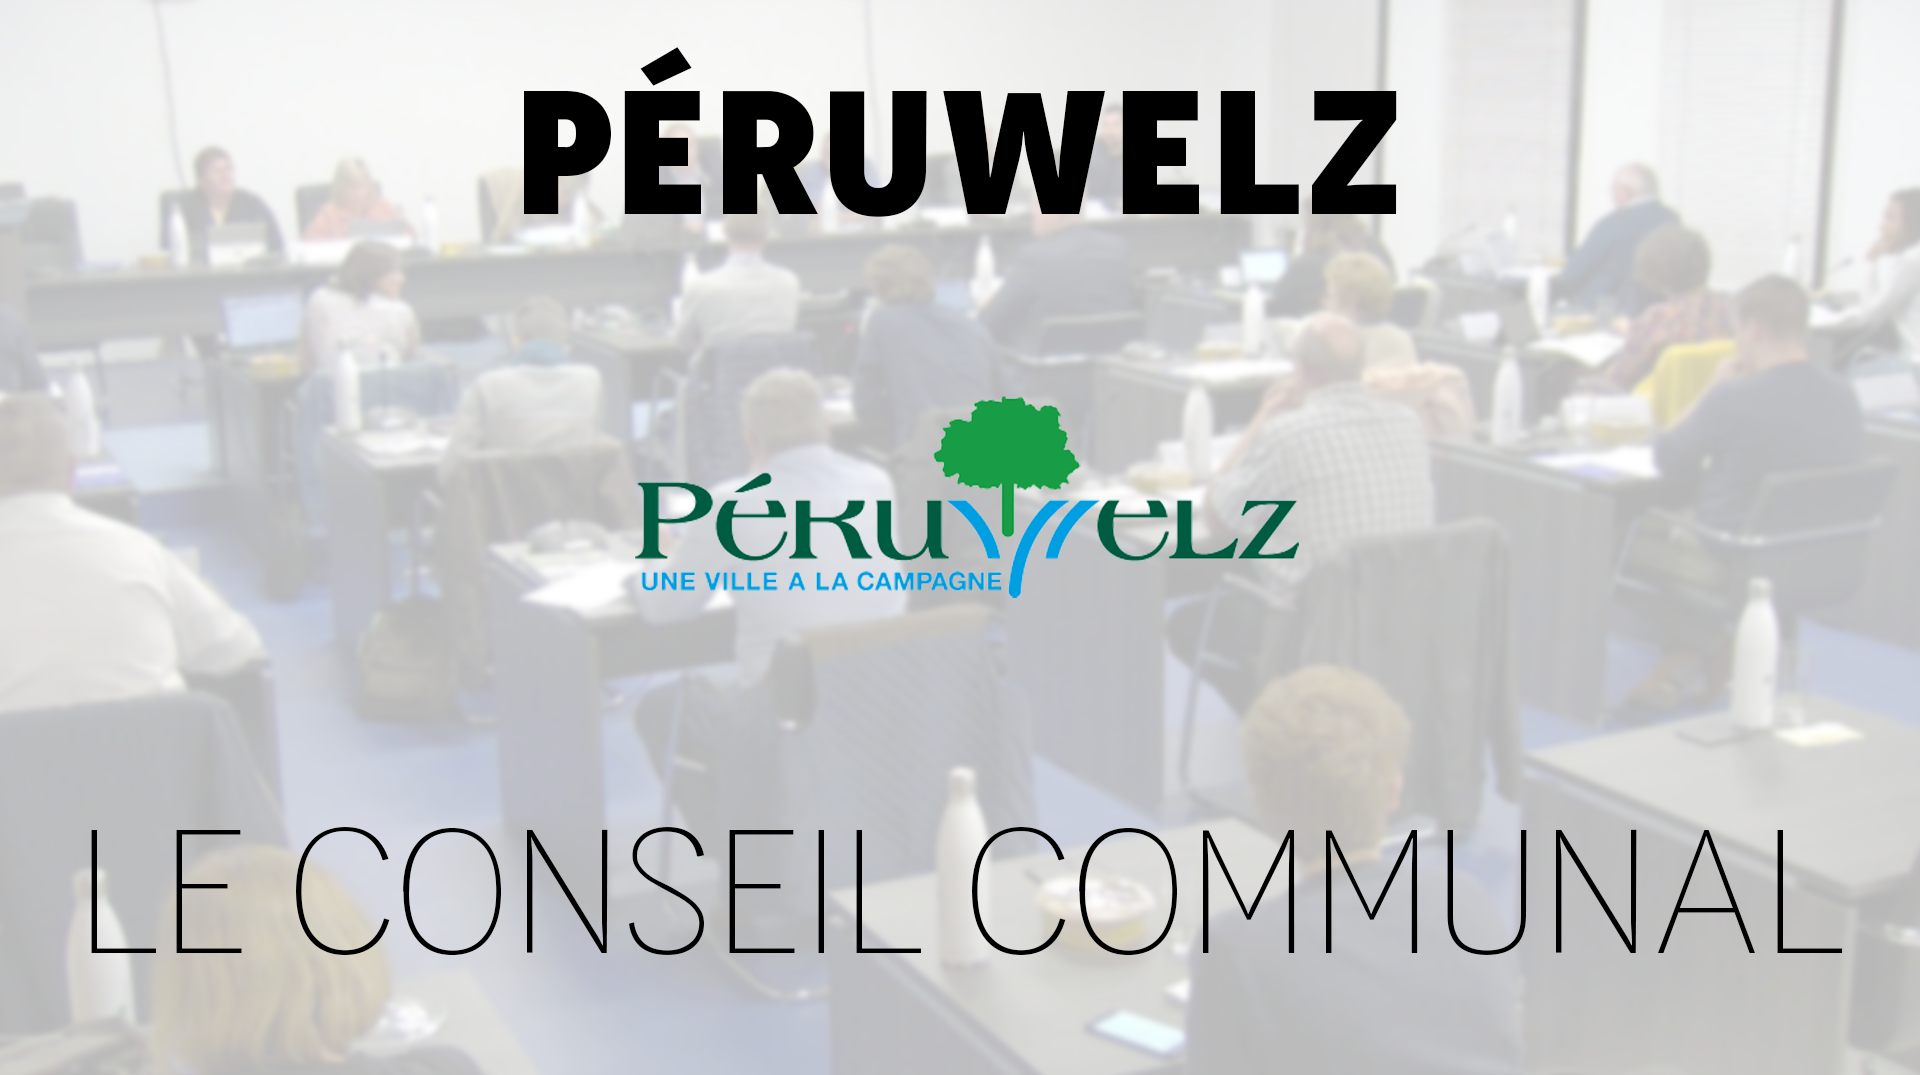 Le conseil communal de Péruwelz